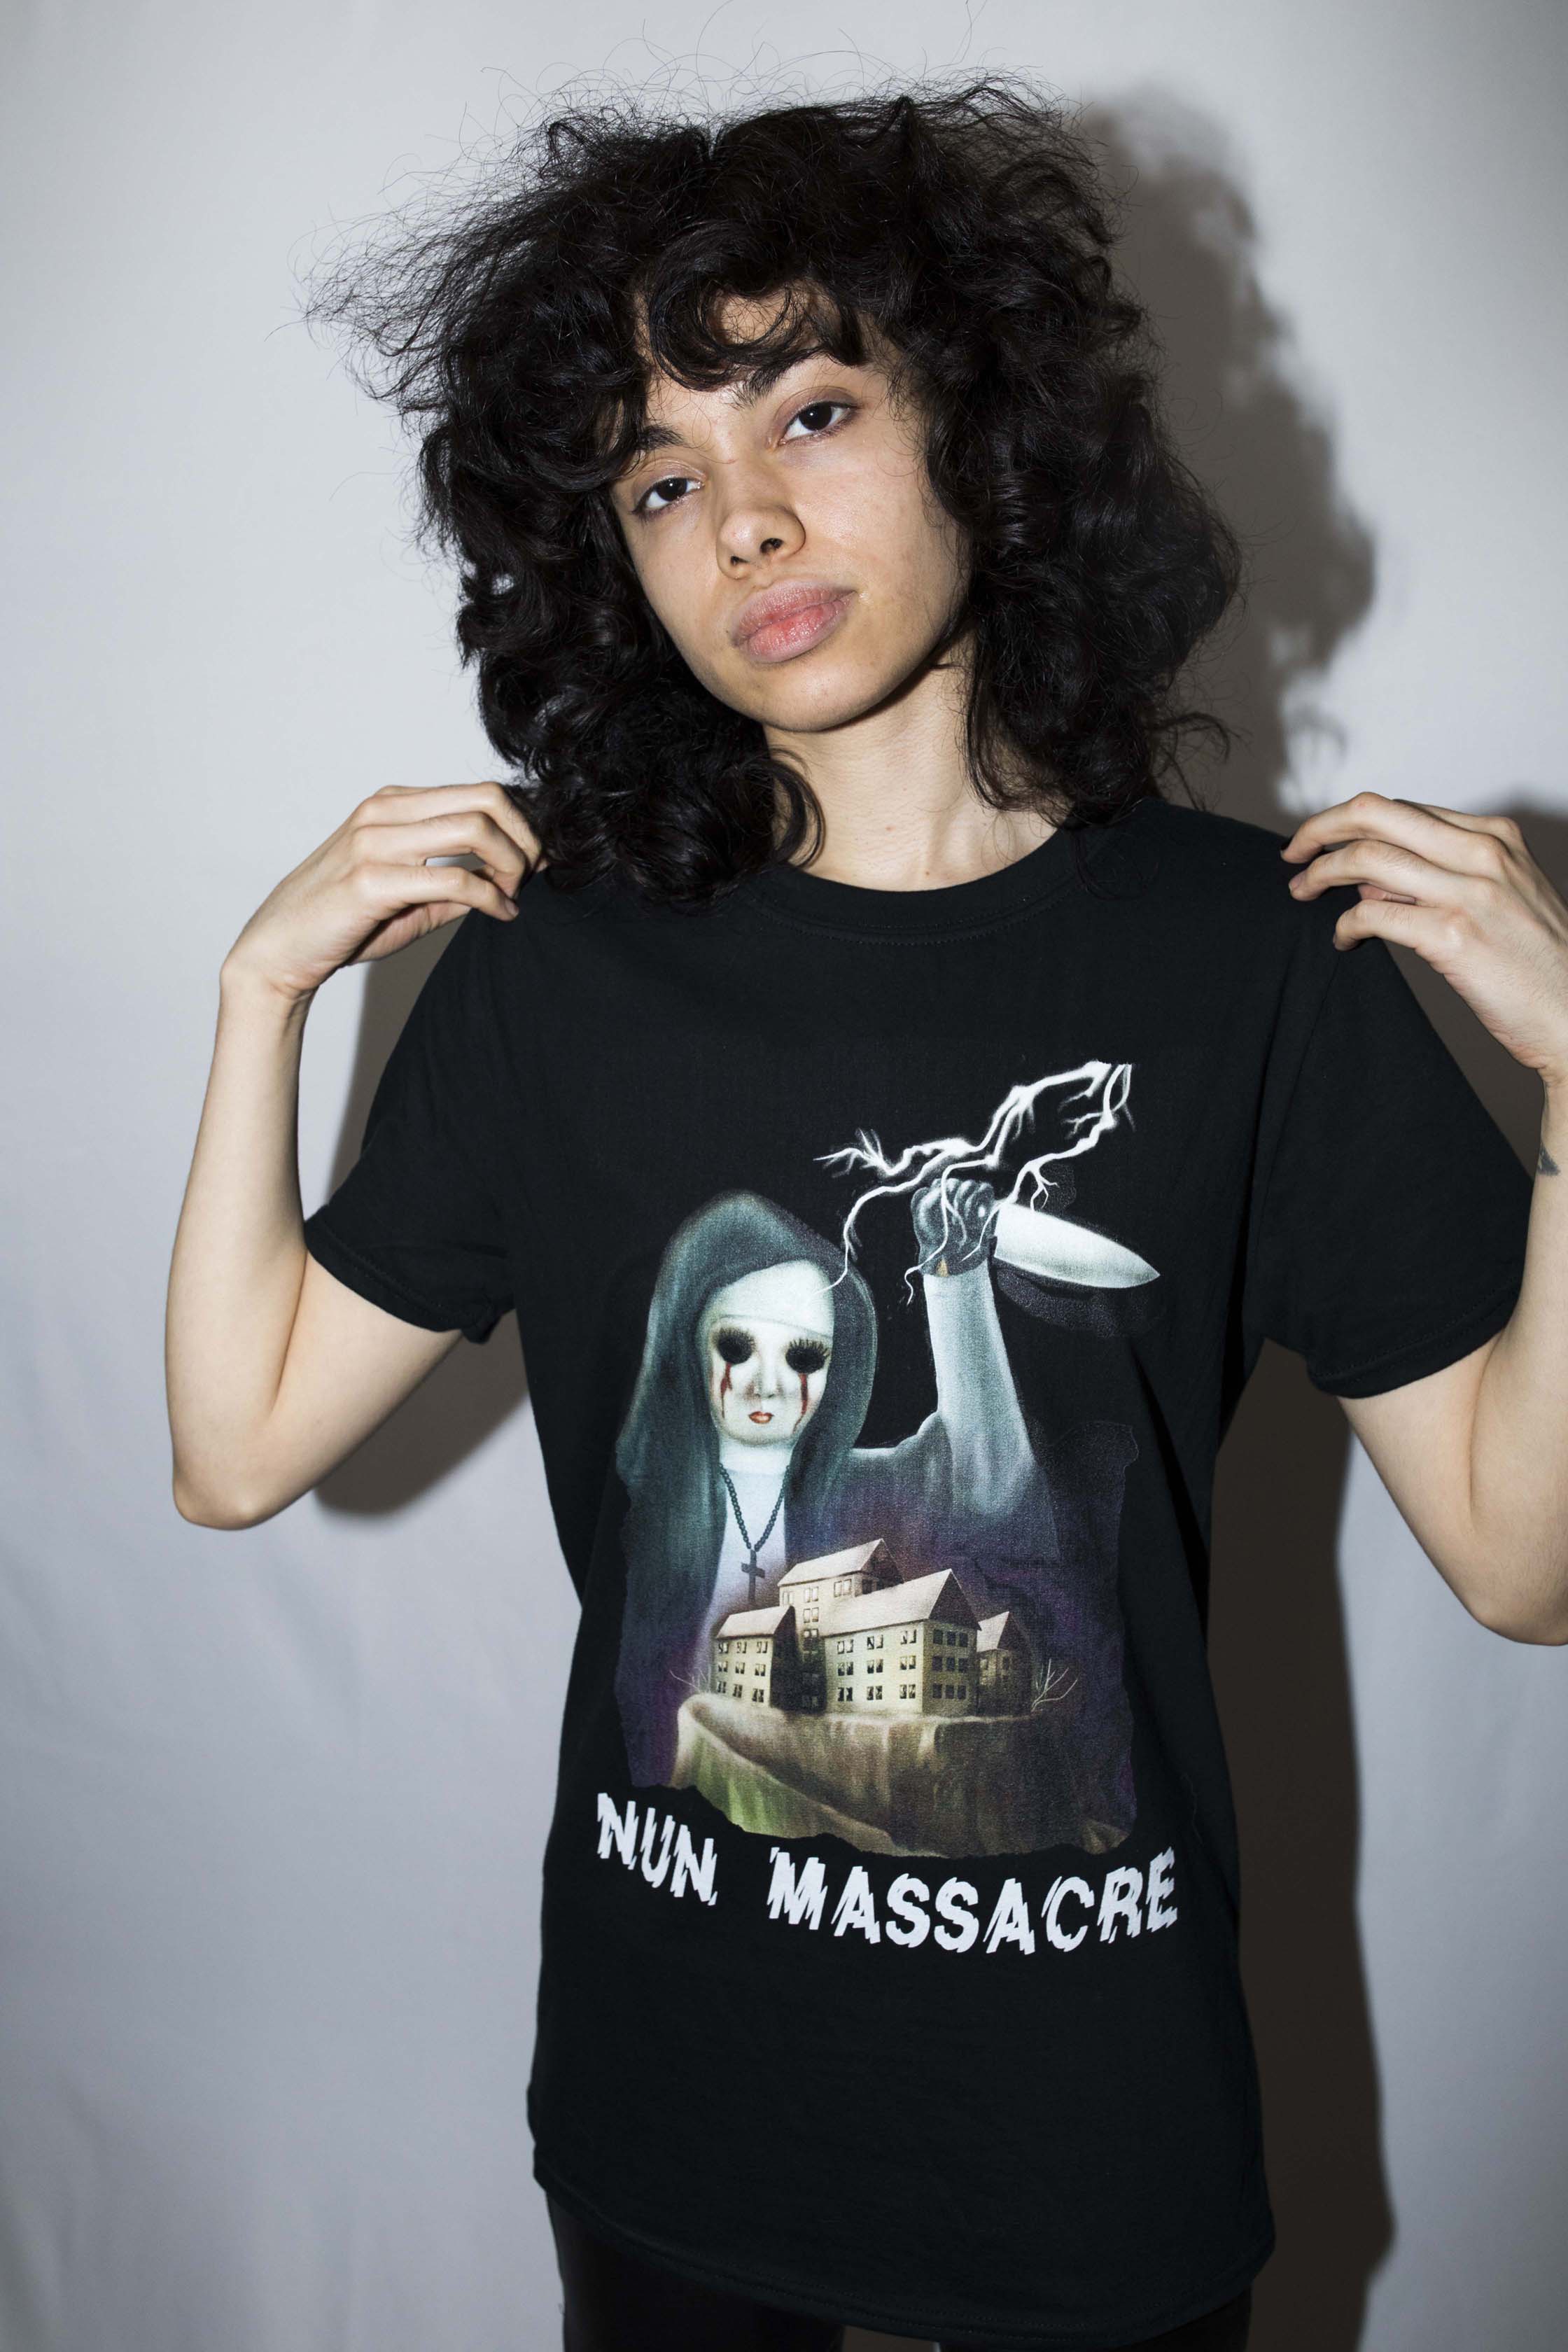 Nun Massacre shirt